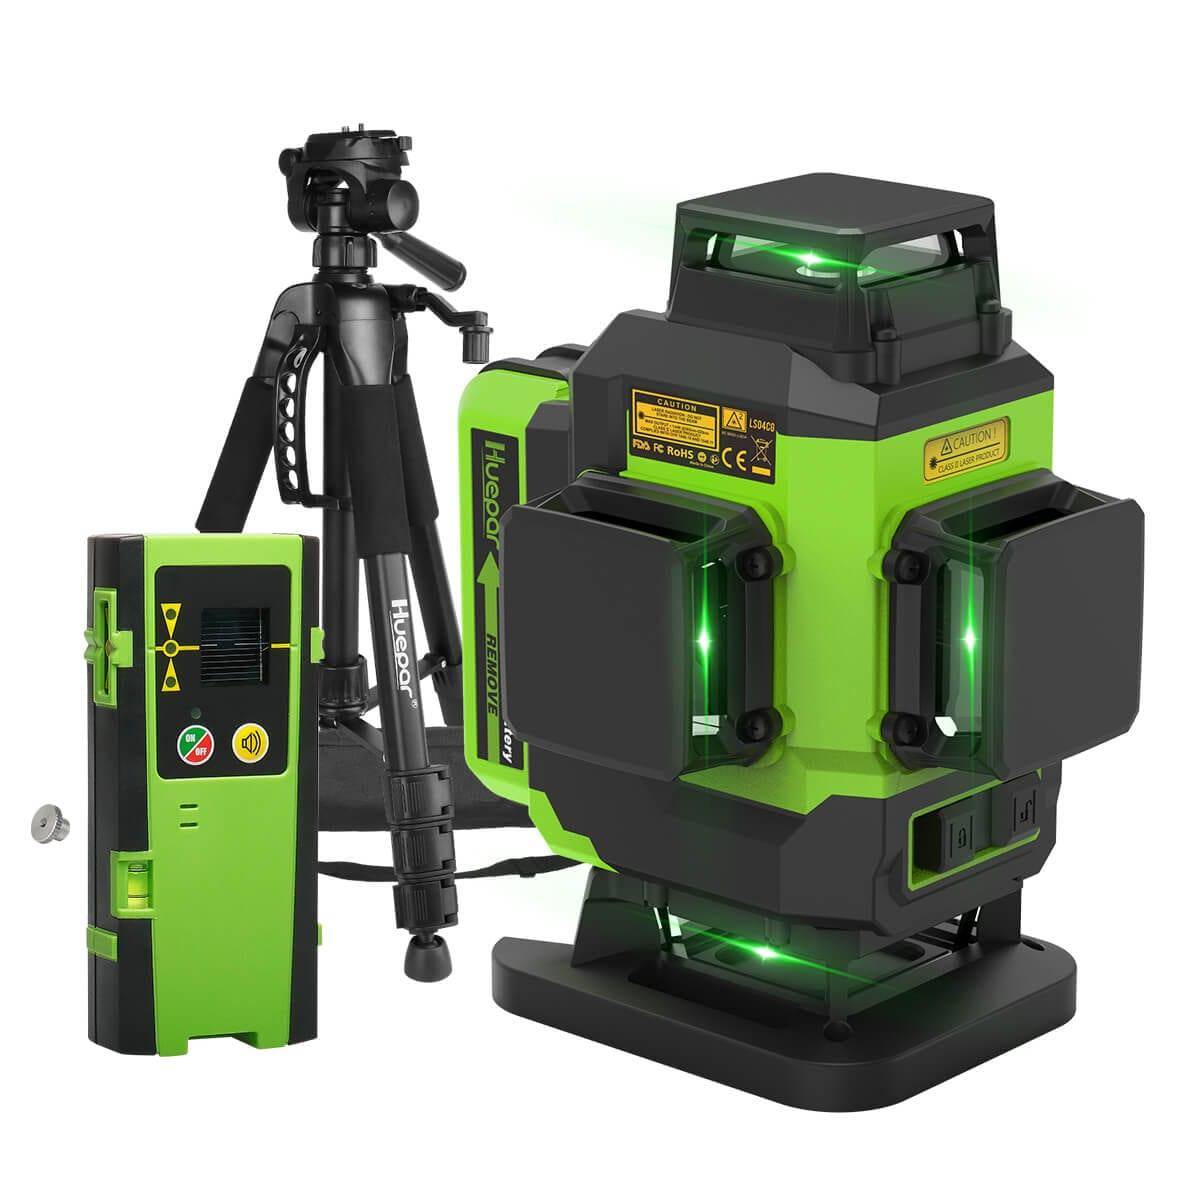 Huepar LS04CG - Self-leveling 4x360 Green Cross Line Floor Laser Tool with Remote Control - HUEPAR UK